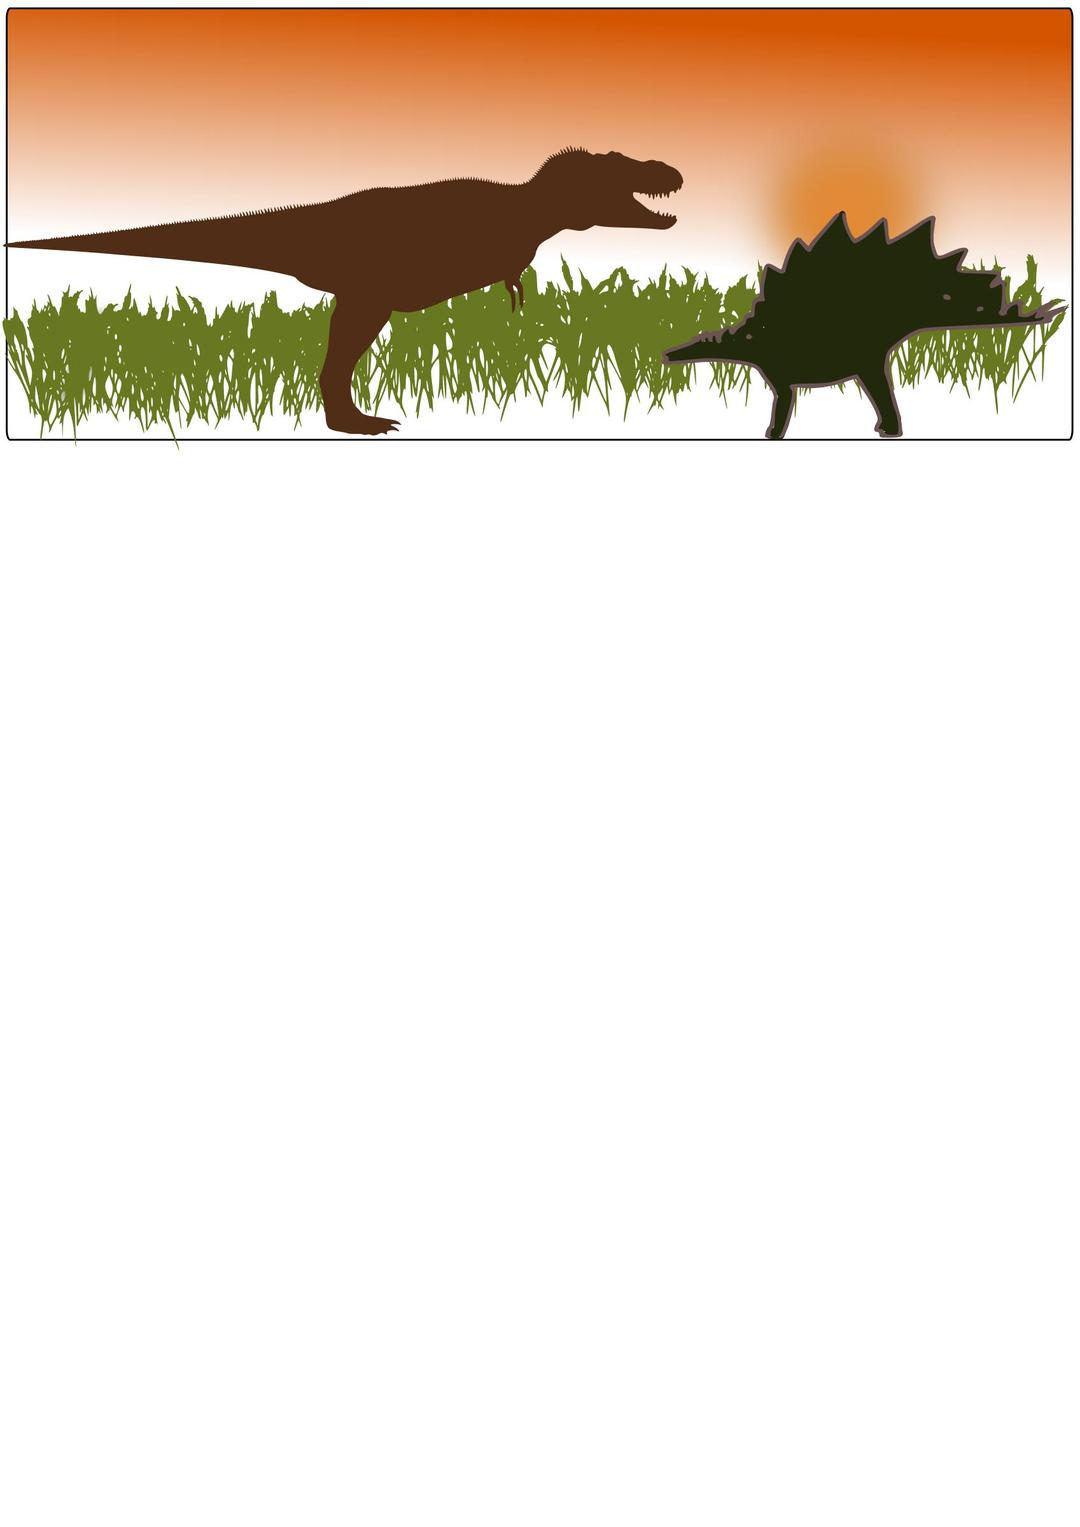 T-Rex vs Stegosaurus png transparent